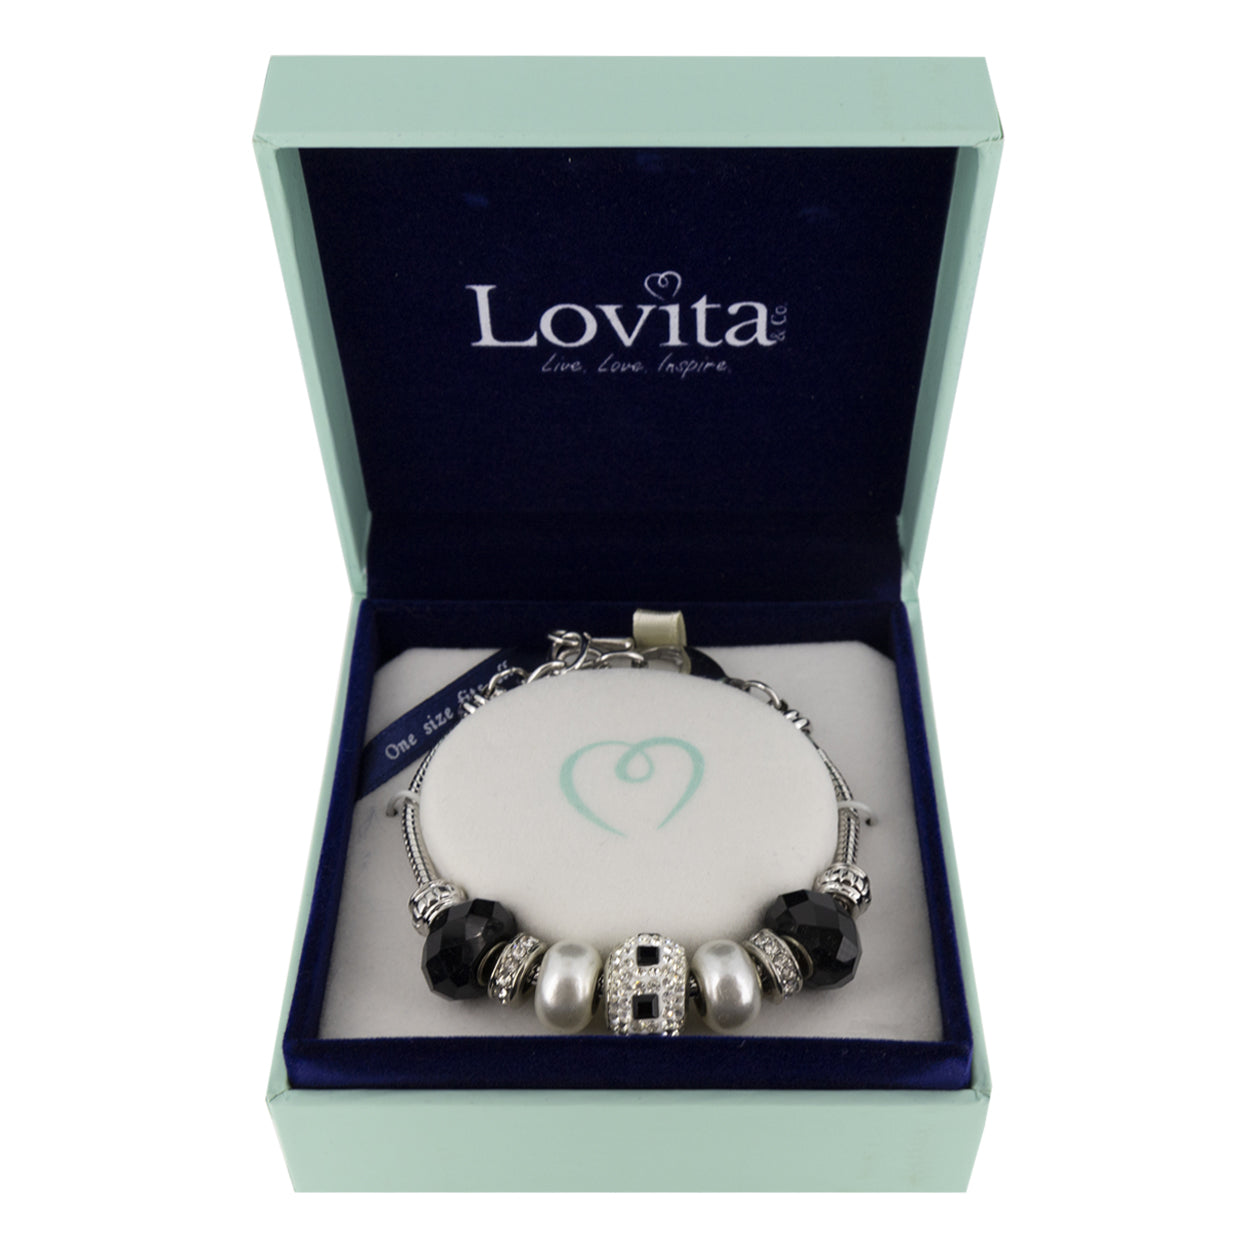 Lovita Charm Bracelet Black And Silver 